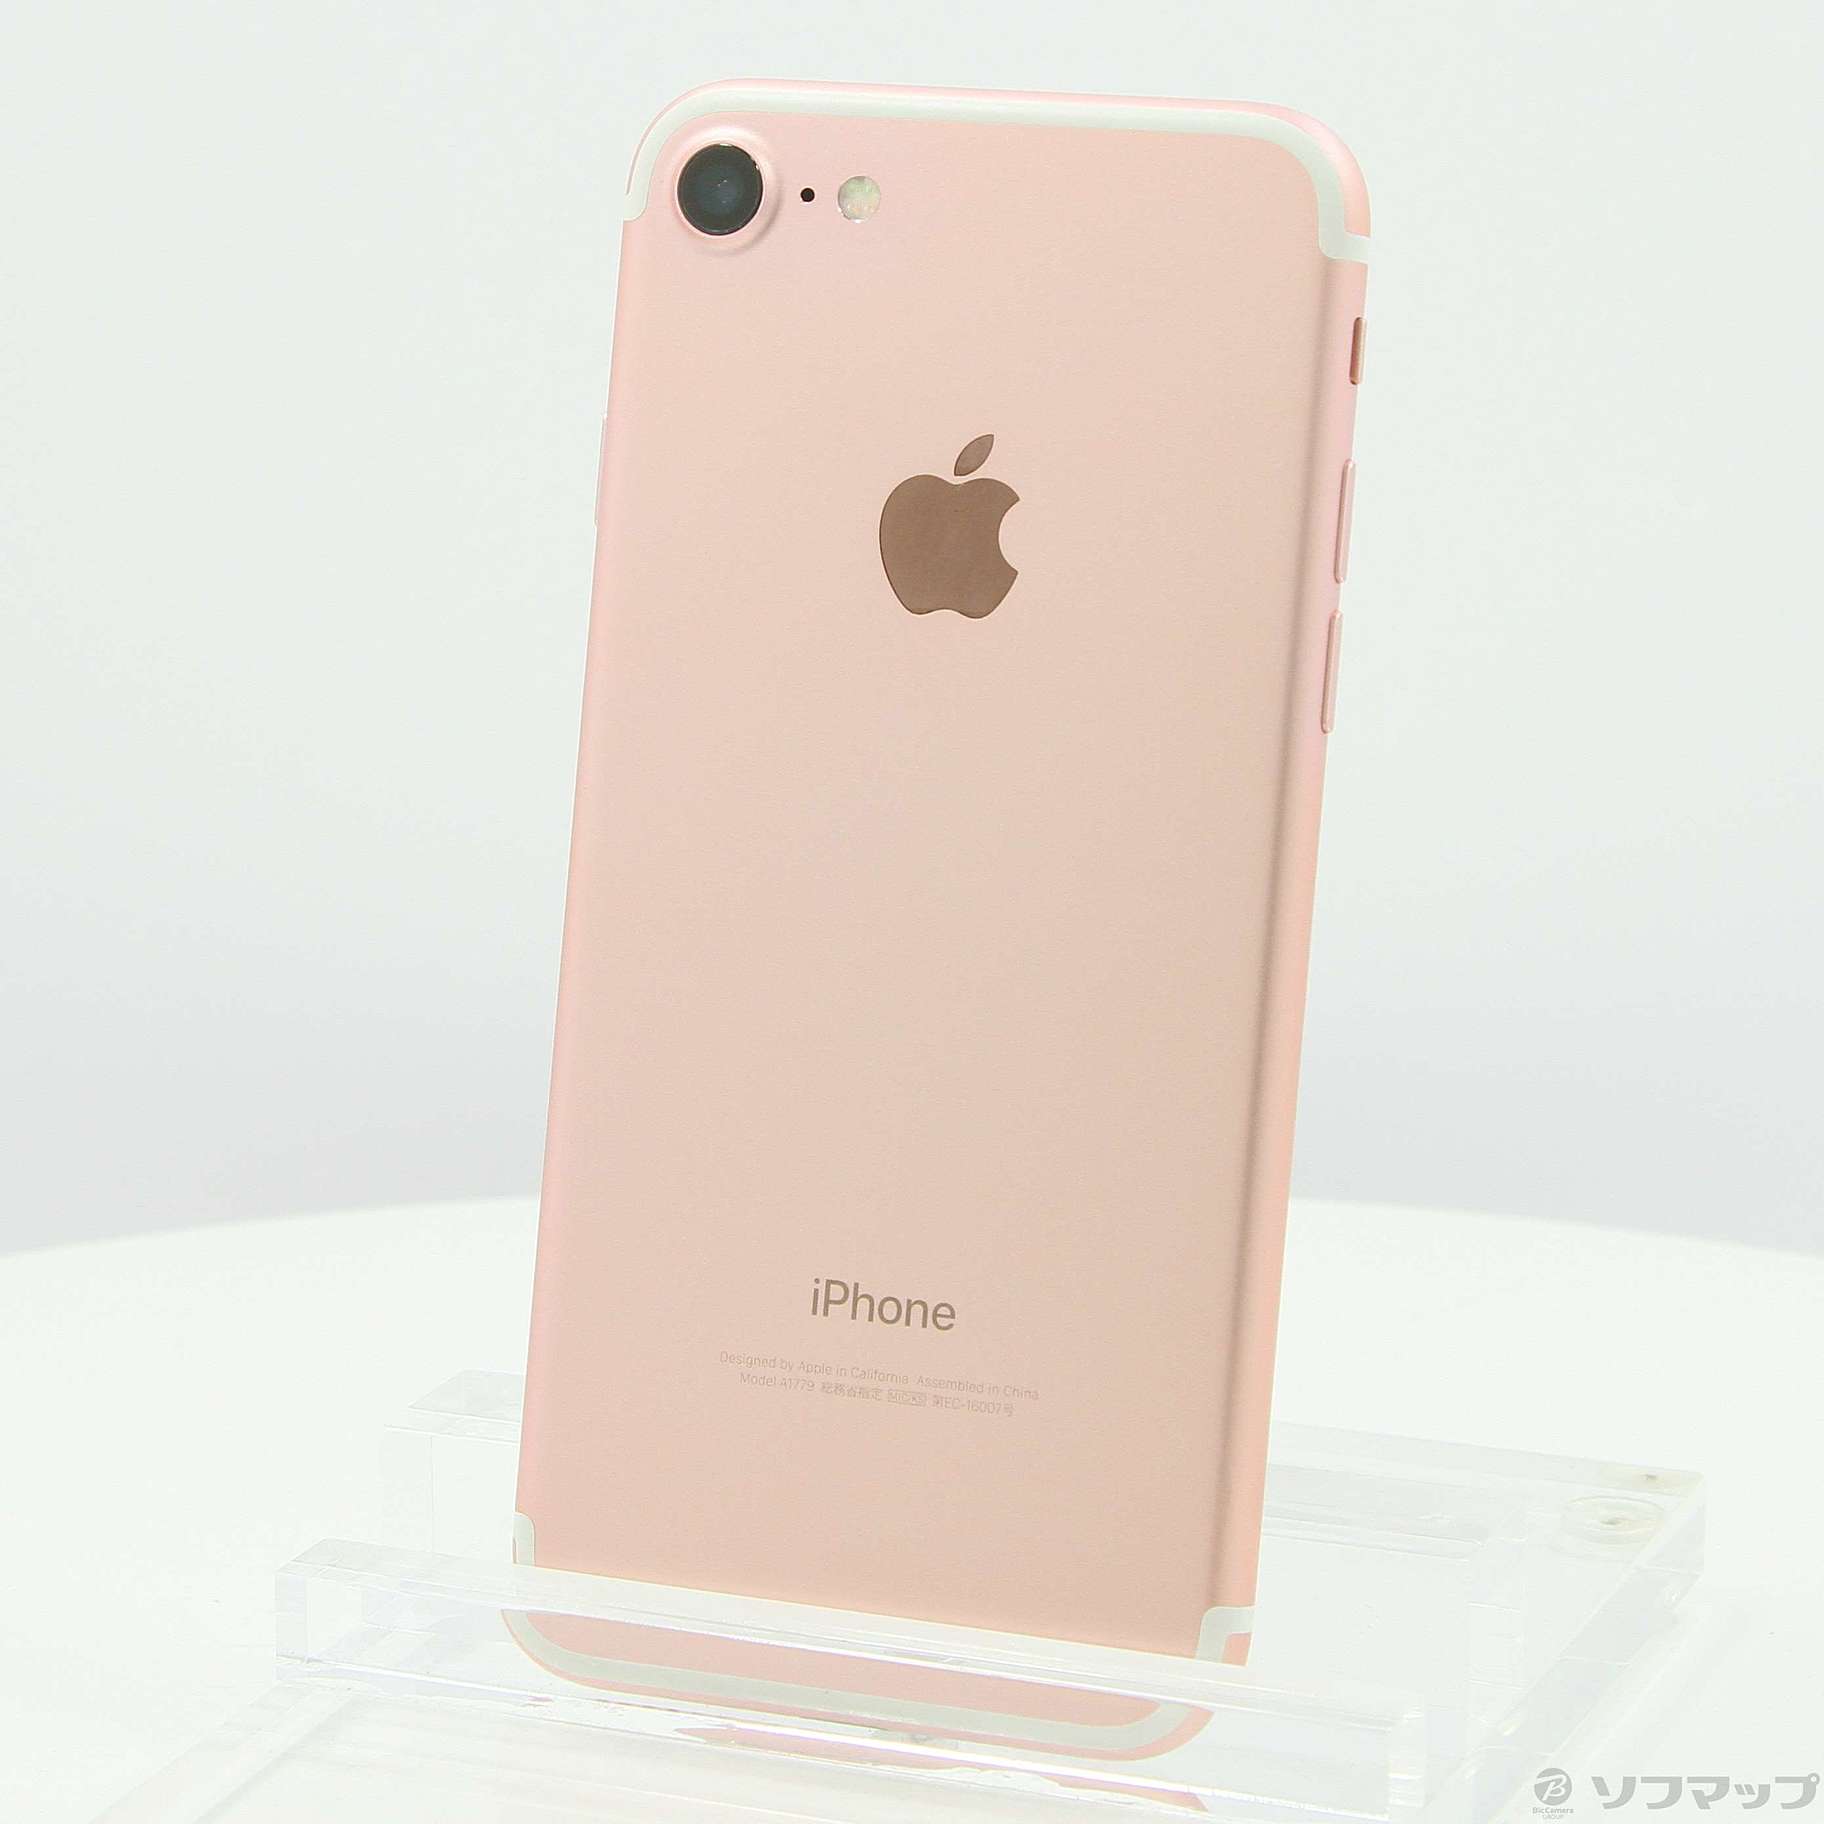 iPhone7 32GB Rose gold auスマホ/家電/カメラ